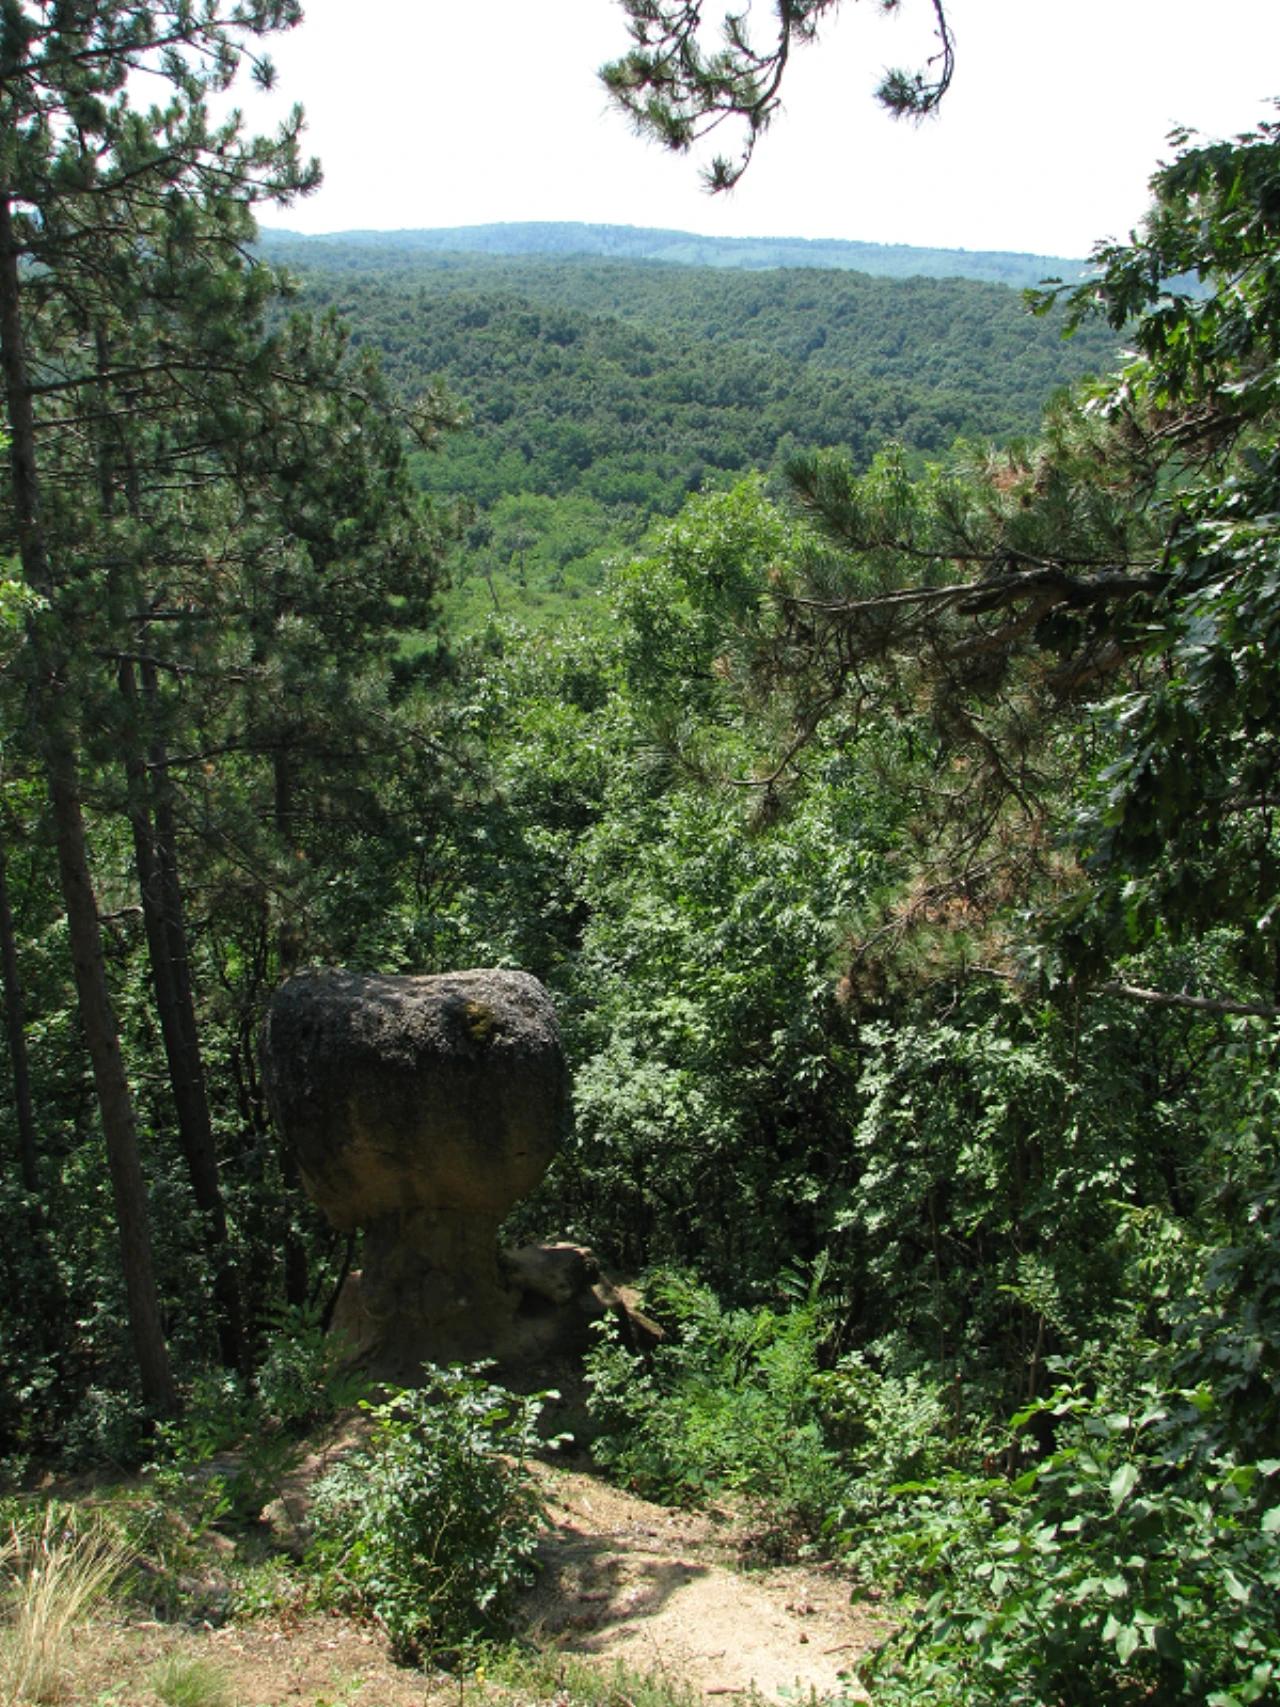 Gomba szikla, kilátóterasz nevü látnivaló 2. számú fényképe